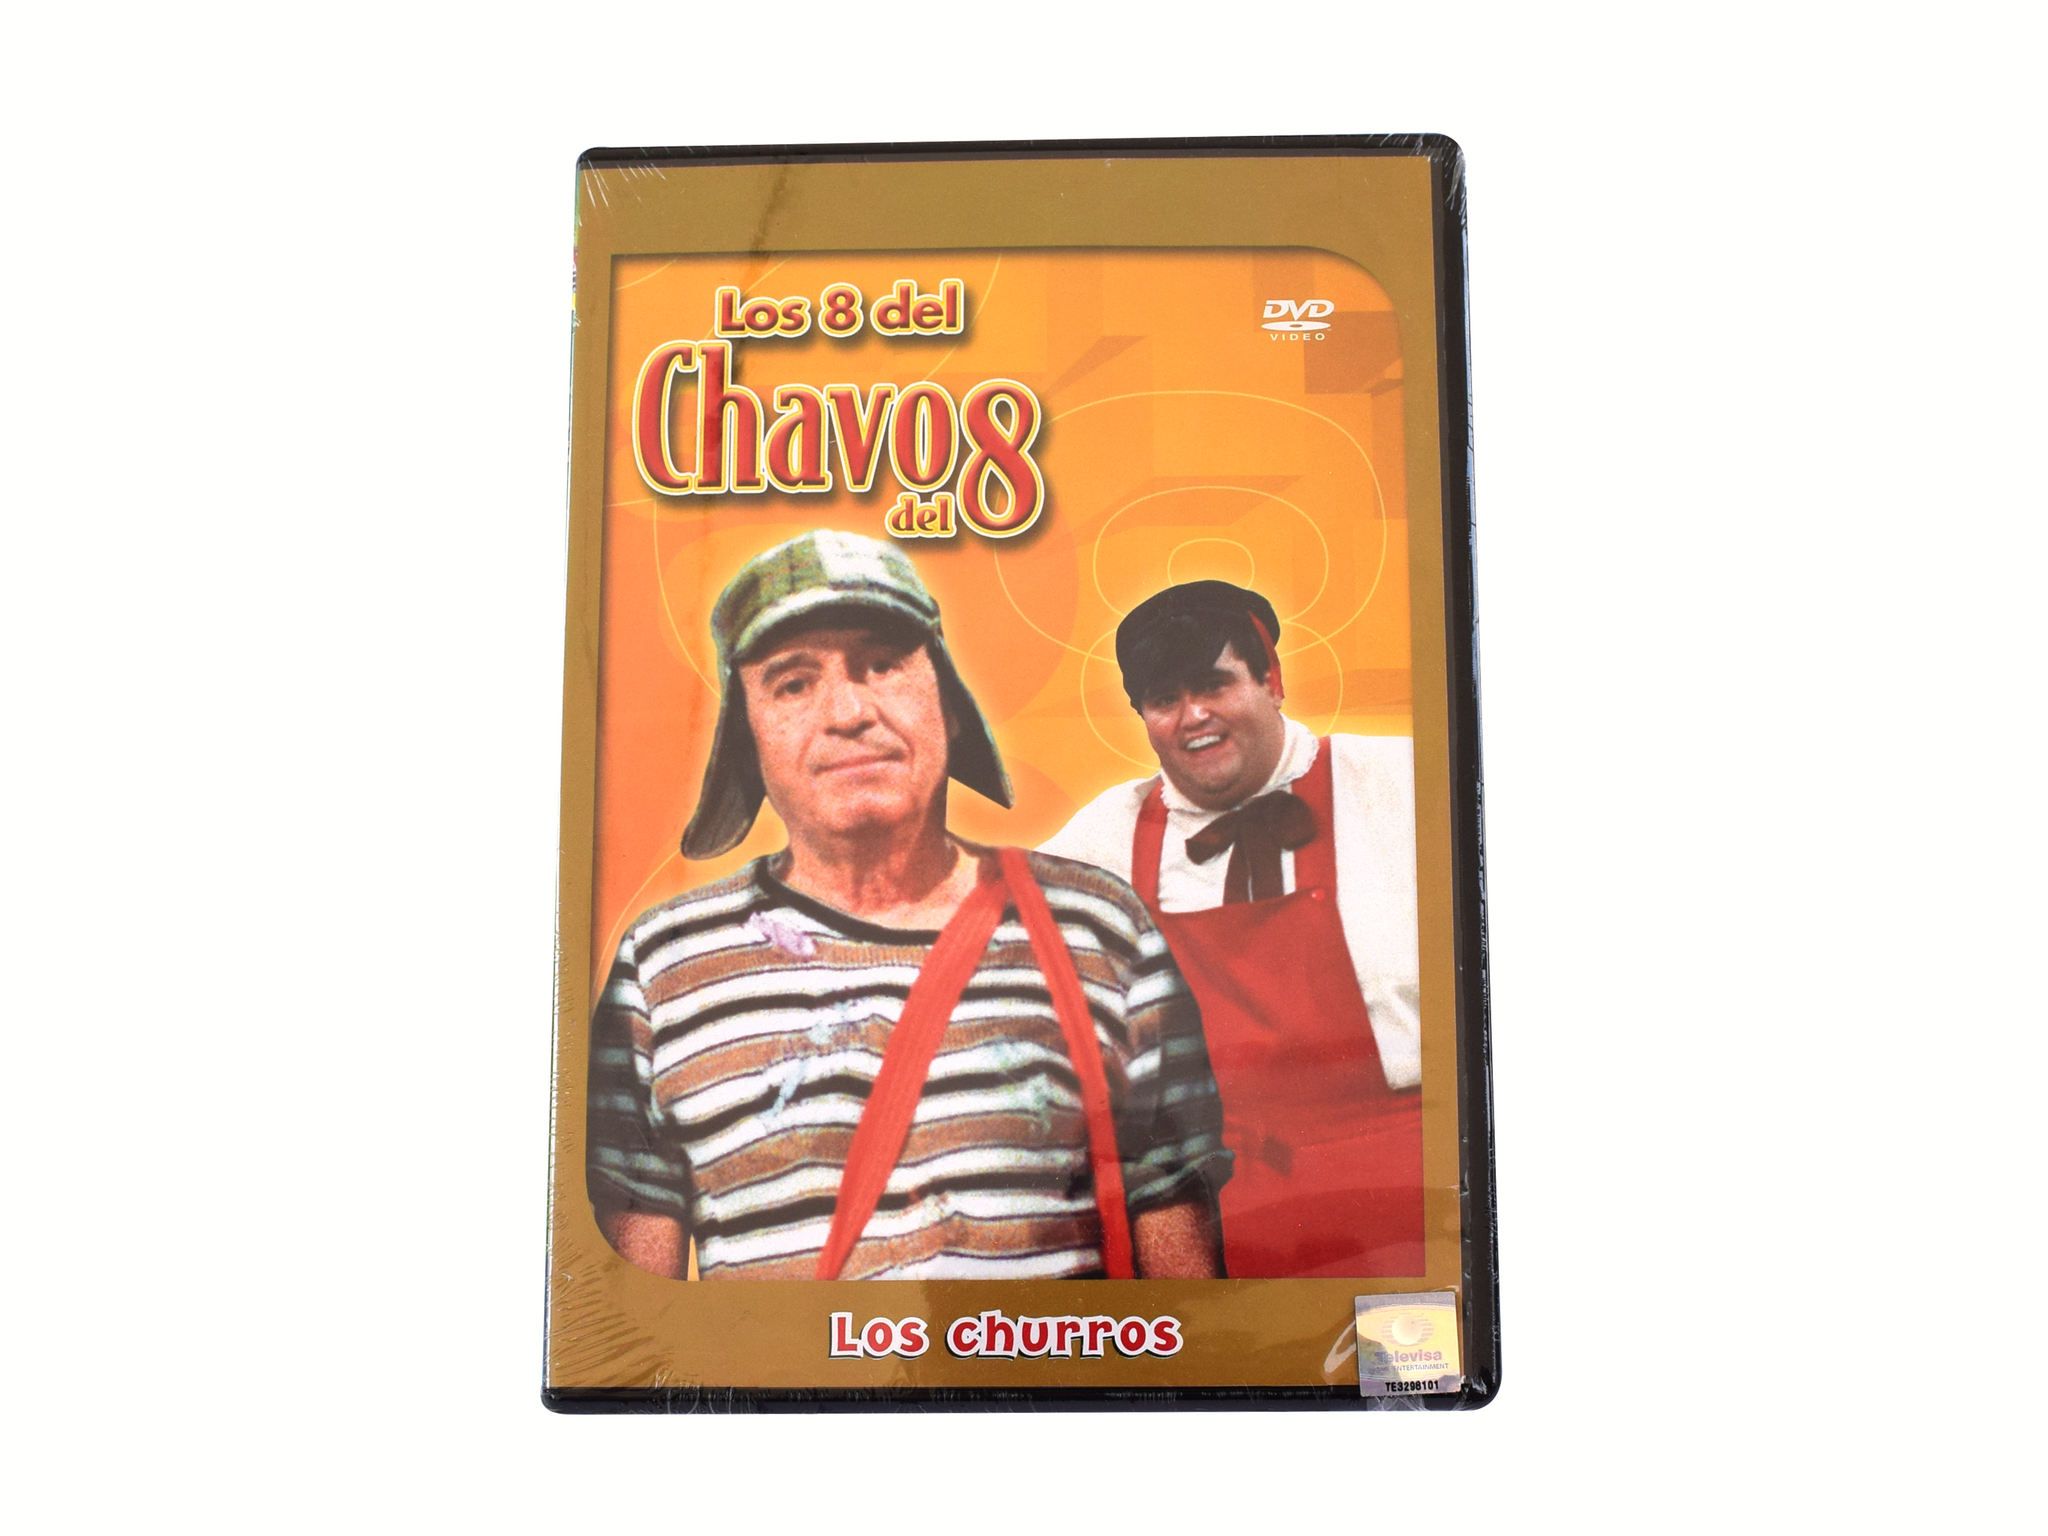 DVD El Chavo del 8 "Los churros"